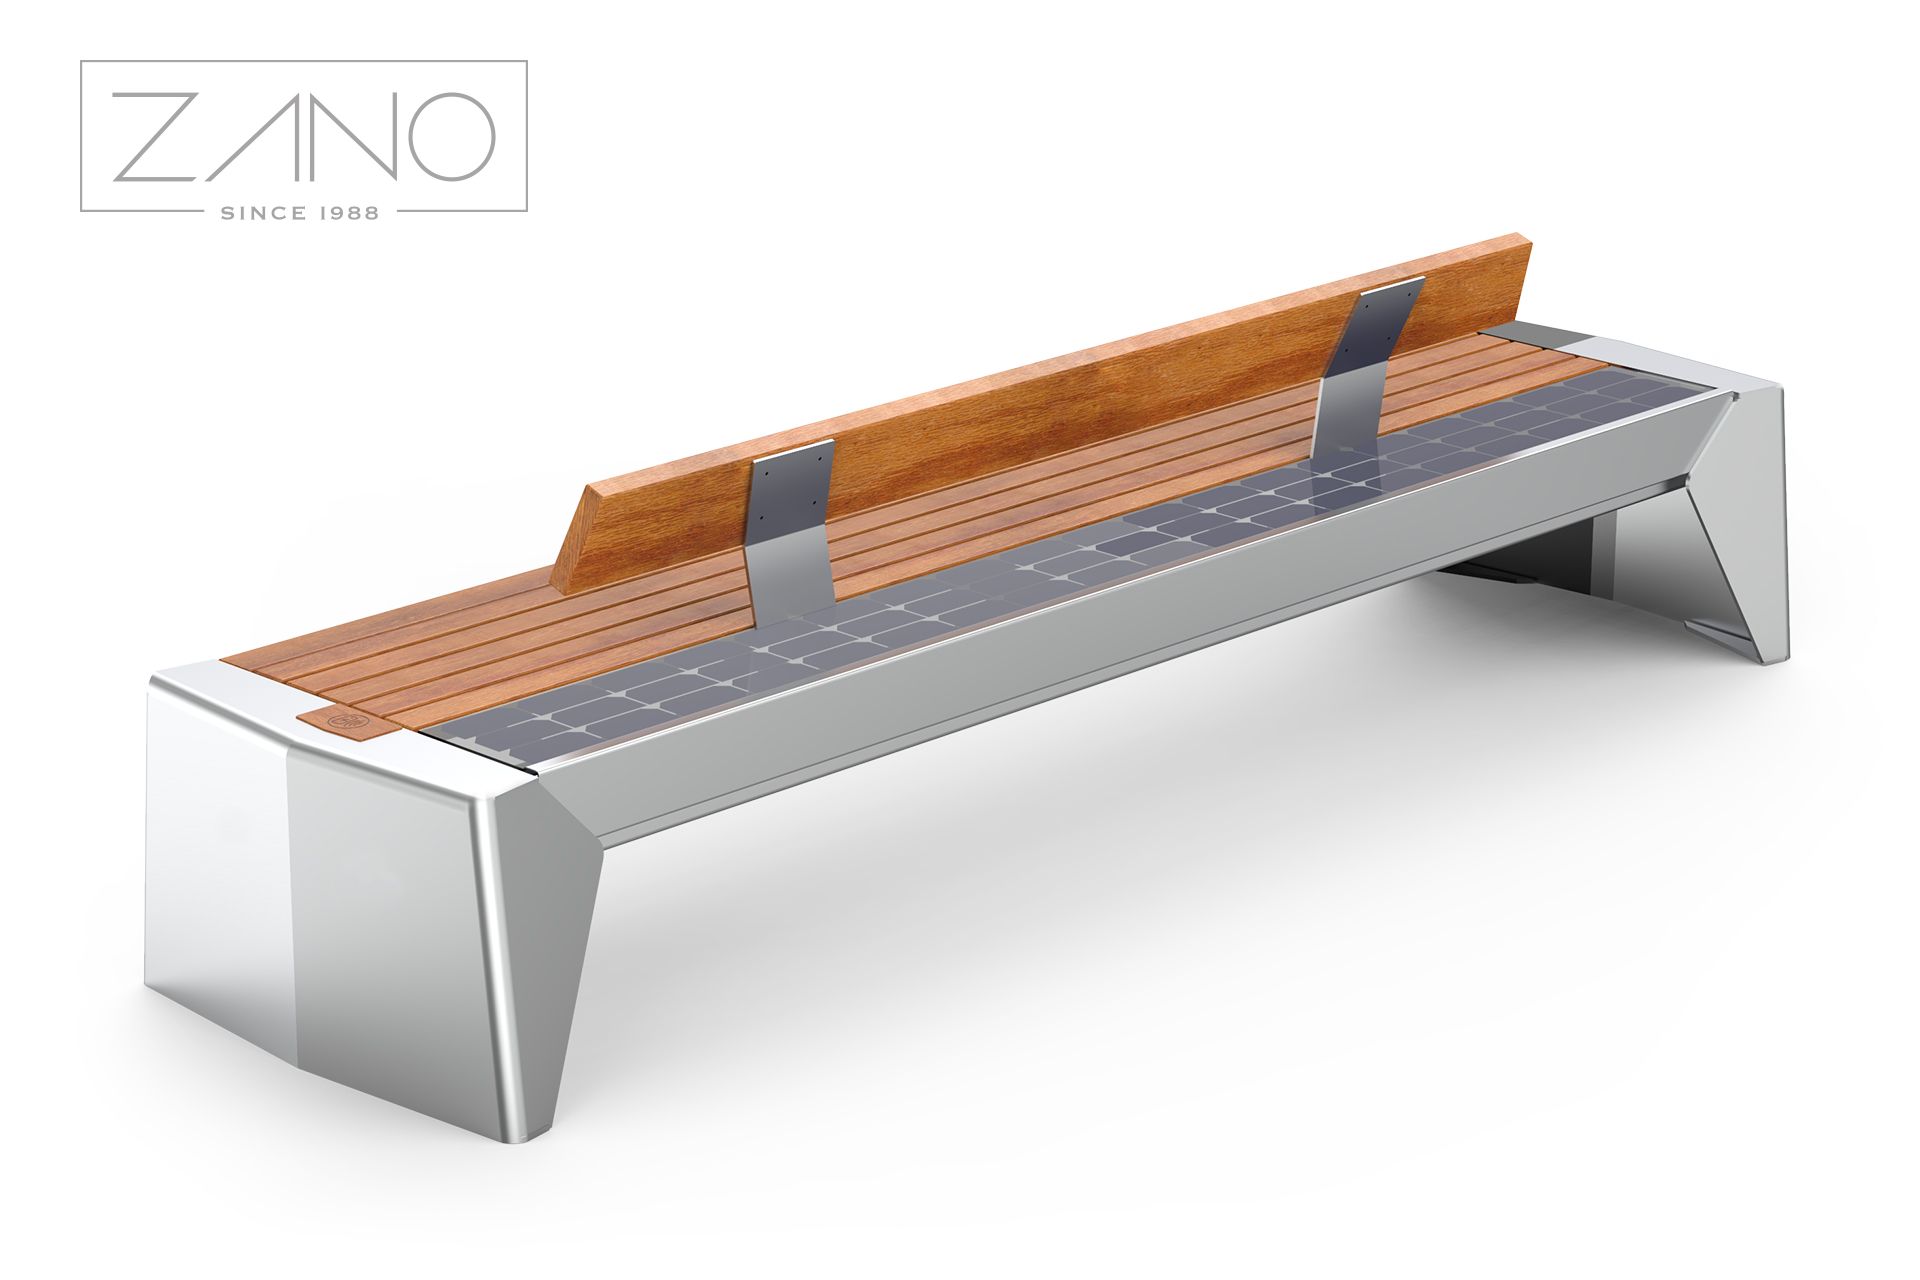 Panchina con pannello fotovoltaico e seduta in legno